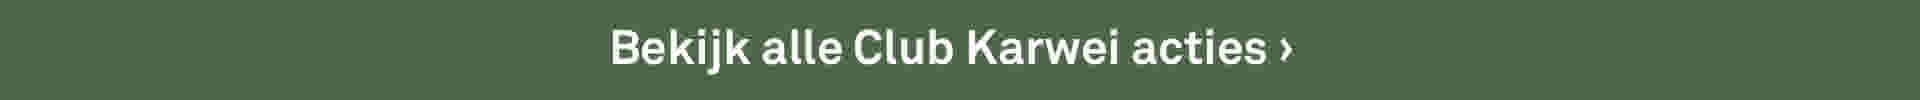 Bekijk alle Club Karwei acties